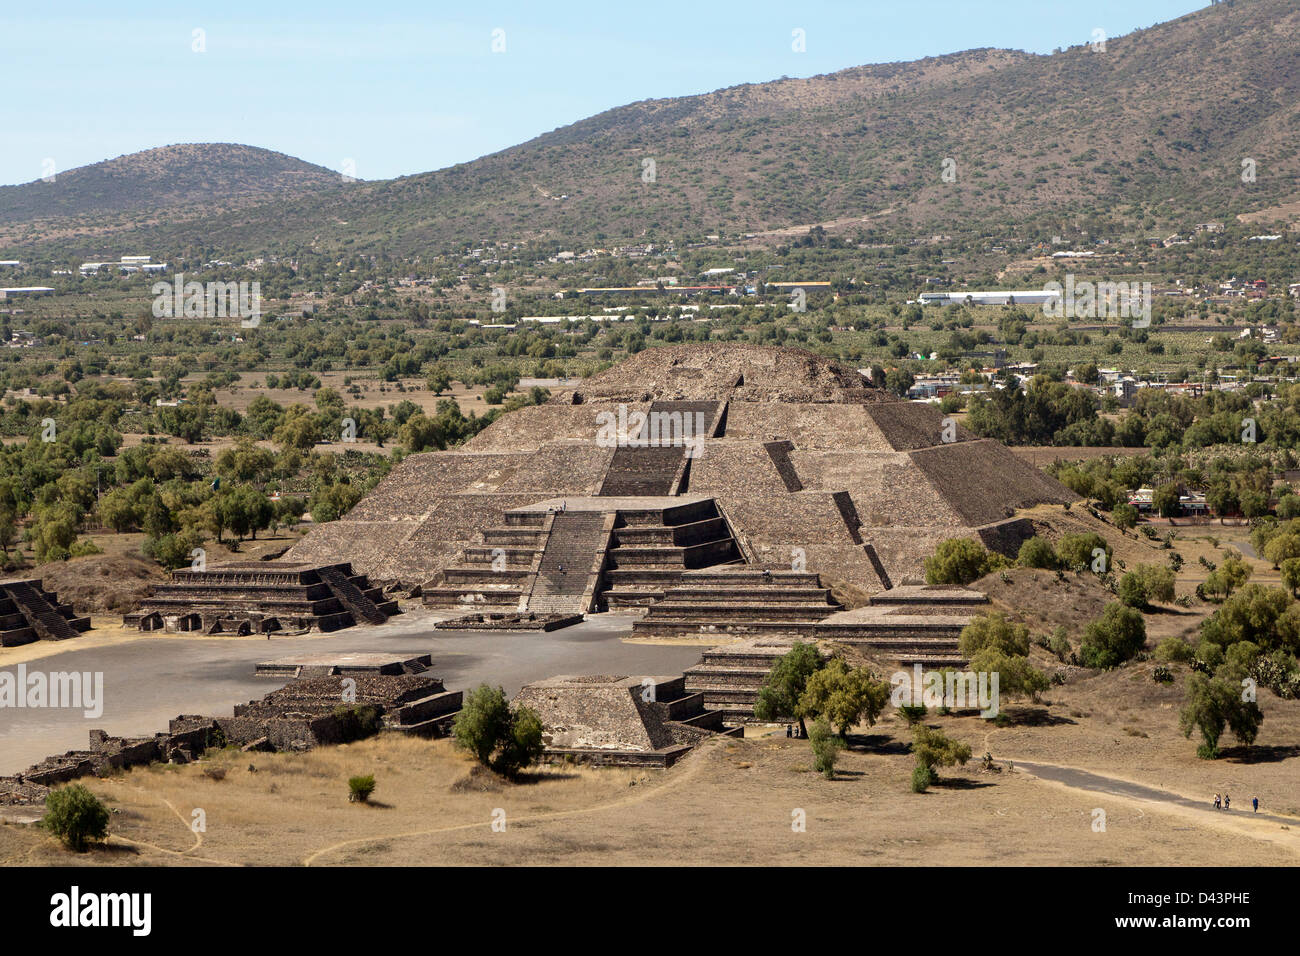 Per i turisti che visitano le Piramidi di Teotihuacan in Messico. Queste sono parte del sito archeologico nel bacino del Messico. Foto Stock